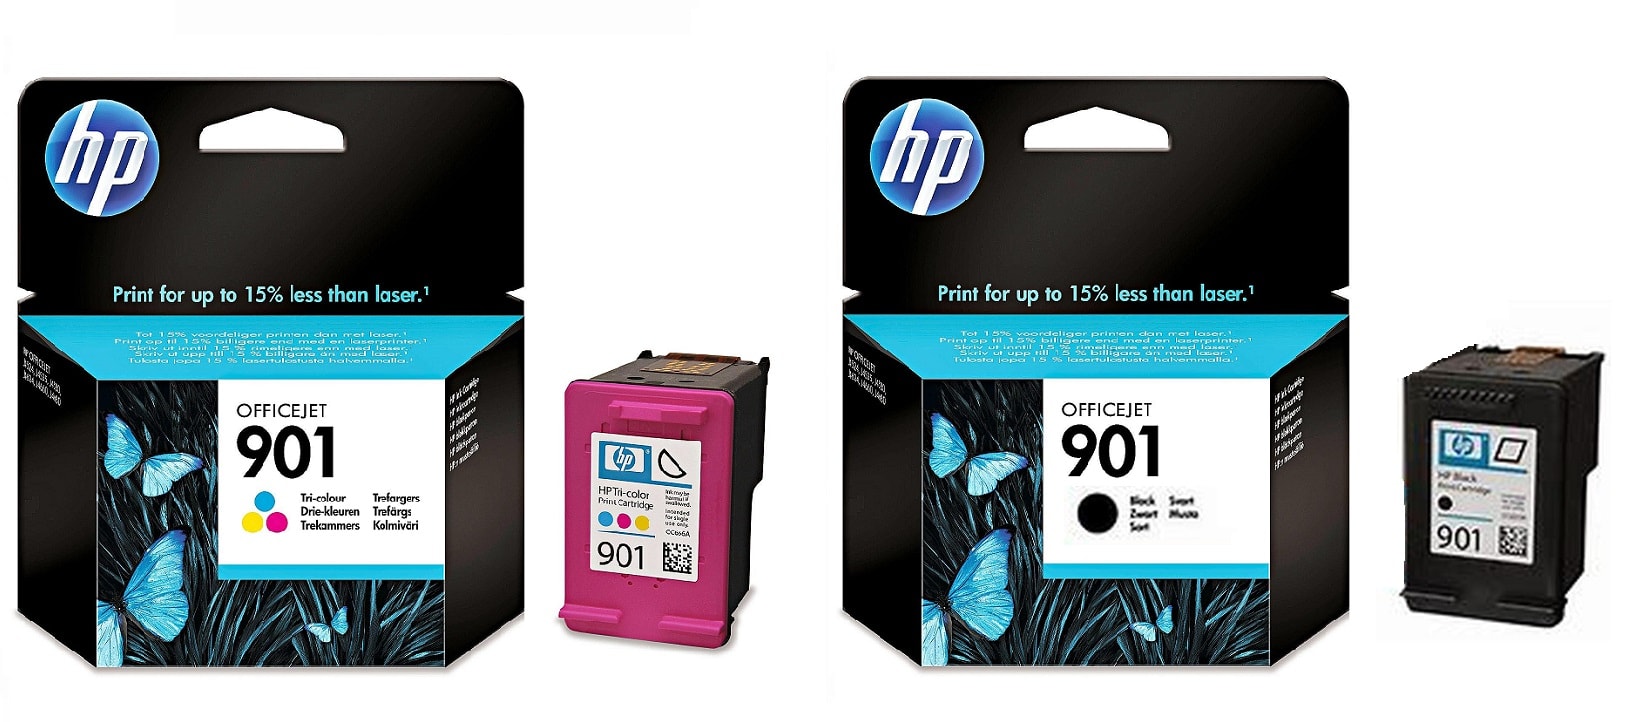 Картриджи hp 901 black hp 901 color для HP Officejet J4680. Купить комплект оригинальных картриджей.